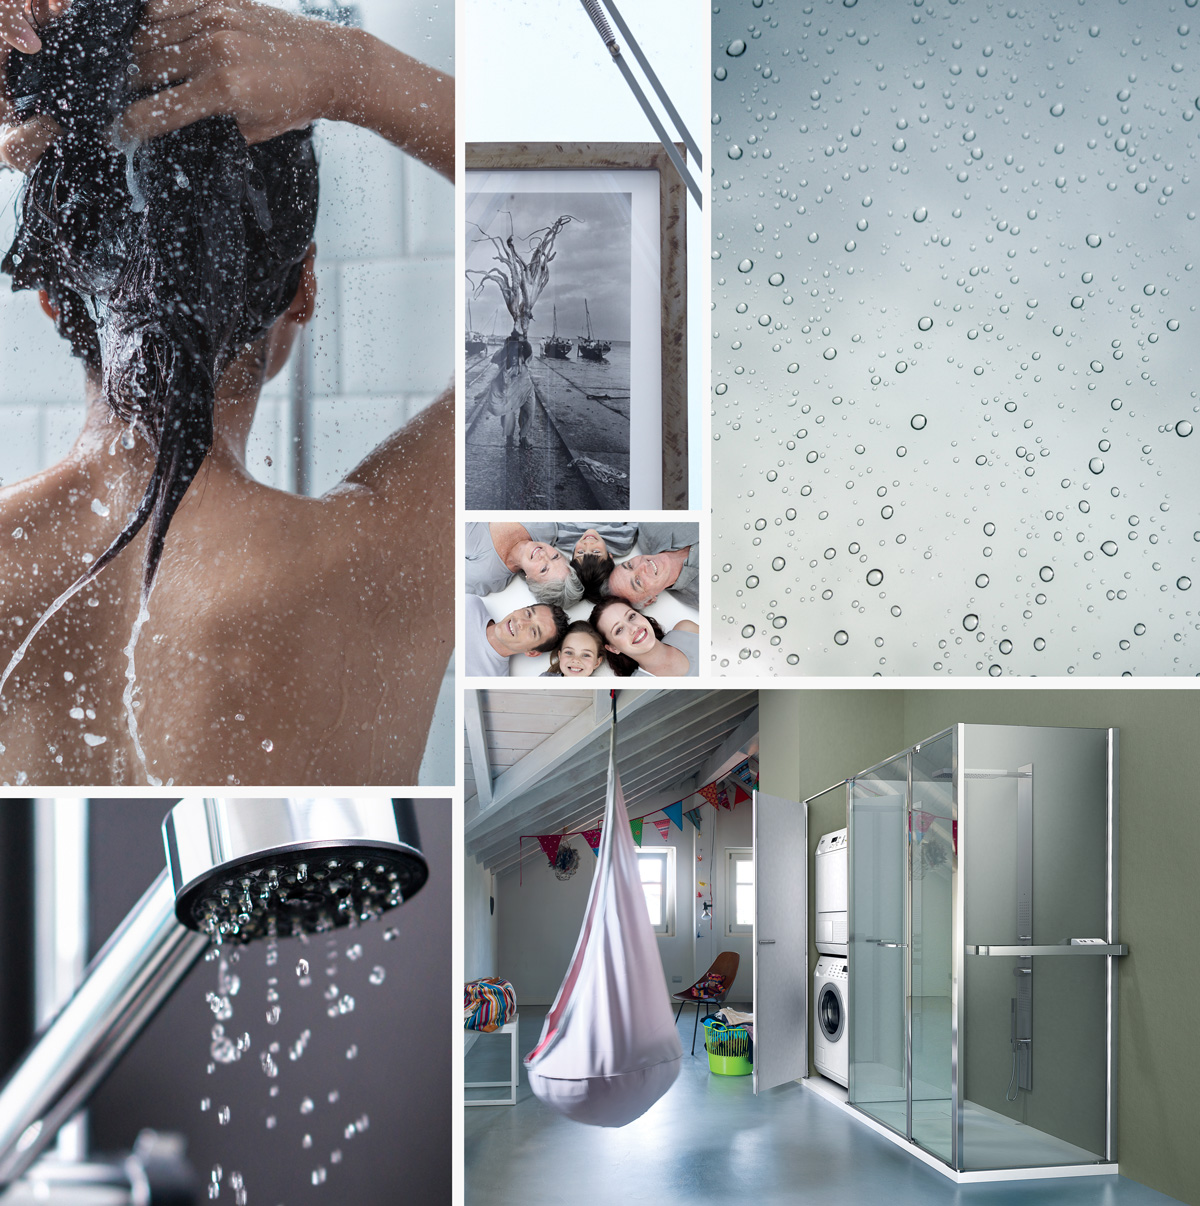 El sistema “TPA” aplicado al vidrio de las cabinas de ducha facilita las operaciones de limpieza y reduce las agresiones de los residuos calcáreos y de la suciedad en general.